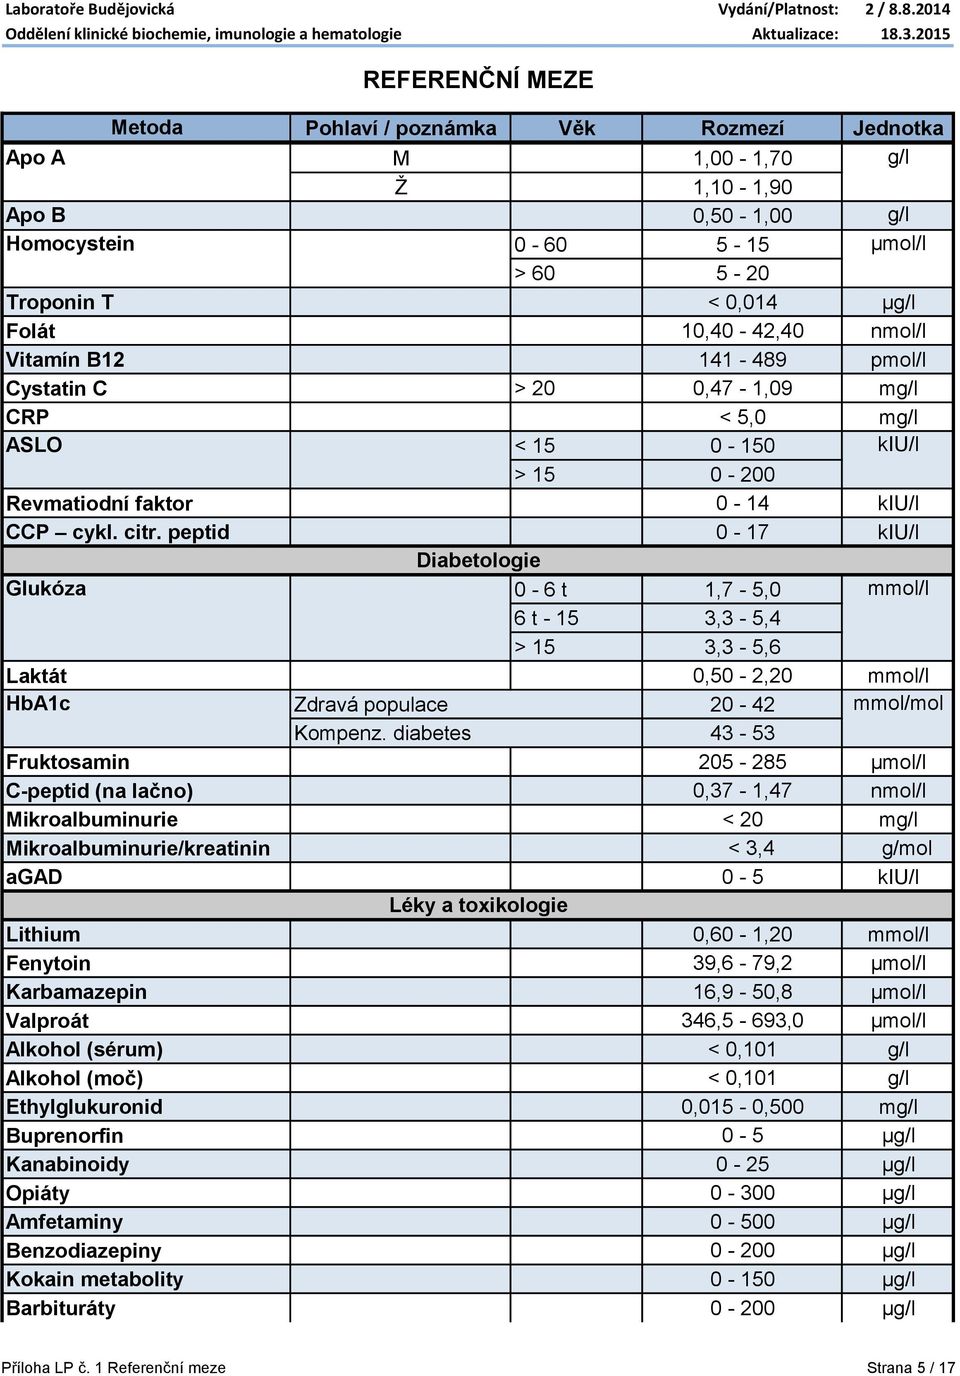 peptid 0-17 kiu/l Diabetologie Glukóza 0-6 t 1,7-5,0 mmol/l 6 t - 15 3,3-5,4 > 15 3,3-5,6 Laktát 0,50-2,20 mmol/l HbA1c Zdravá populace 20-42 mmol/mol Kompenz.